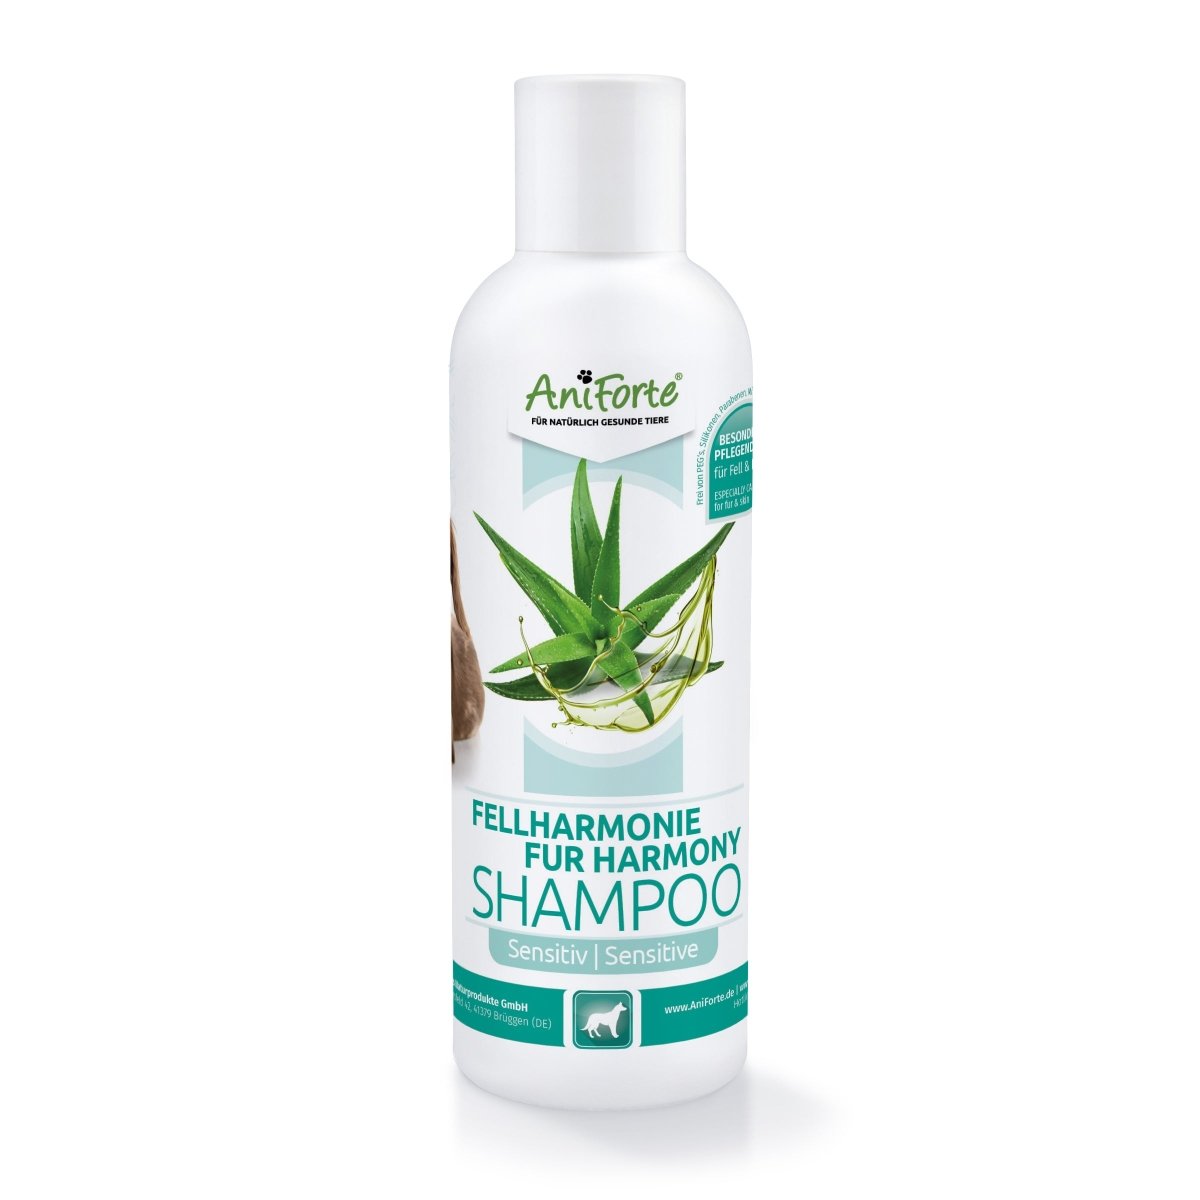 Fellharmonie Shampoo Sensitiv - AniForte